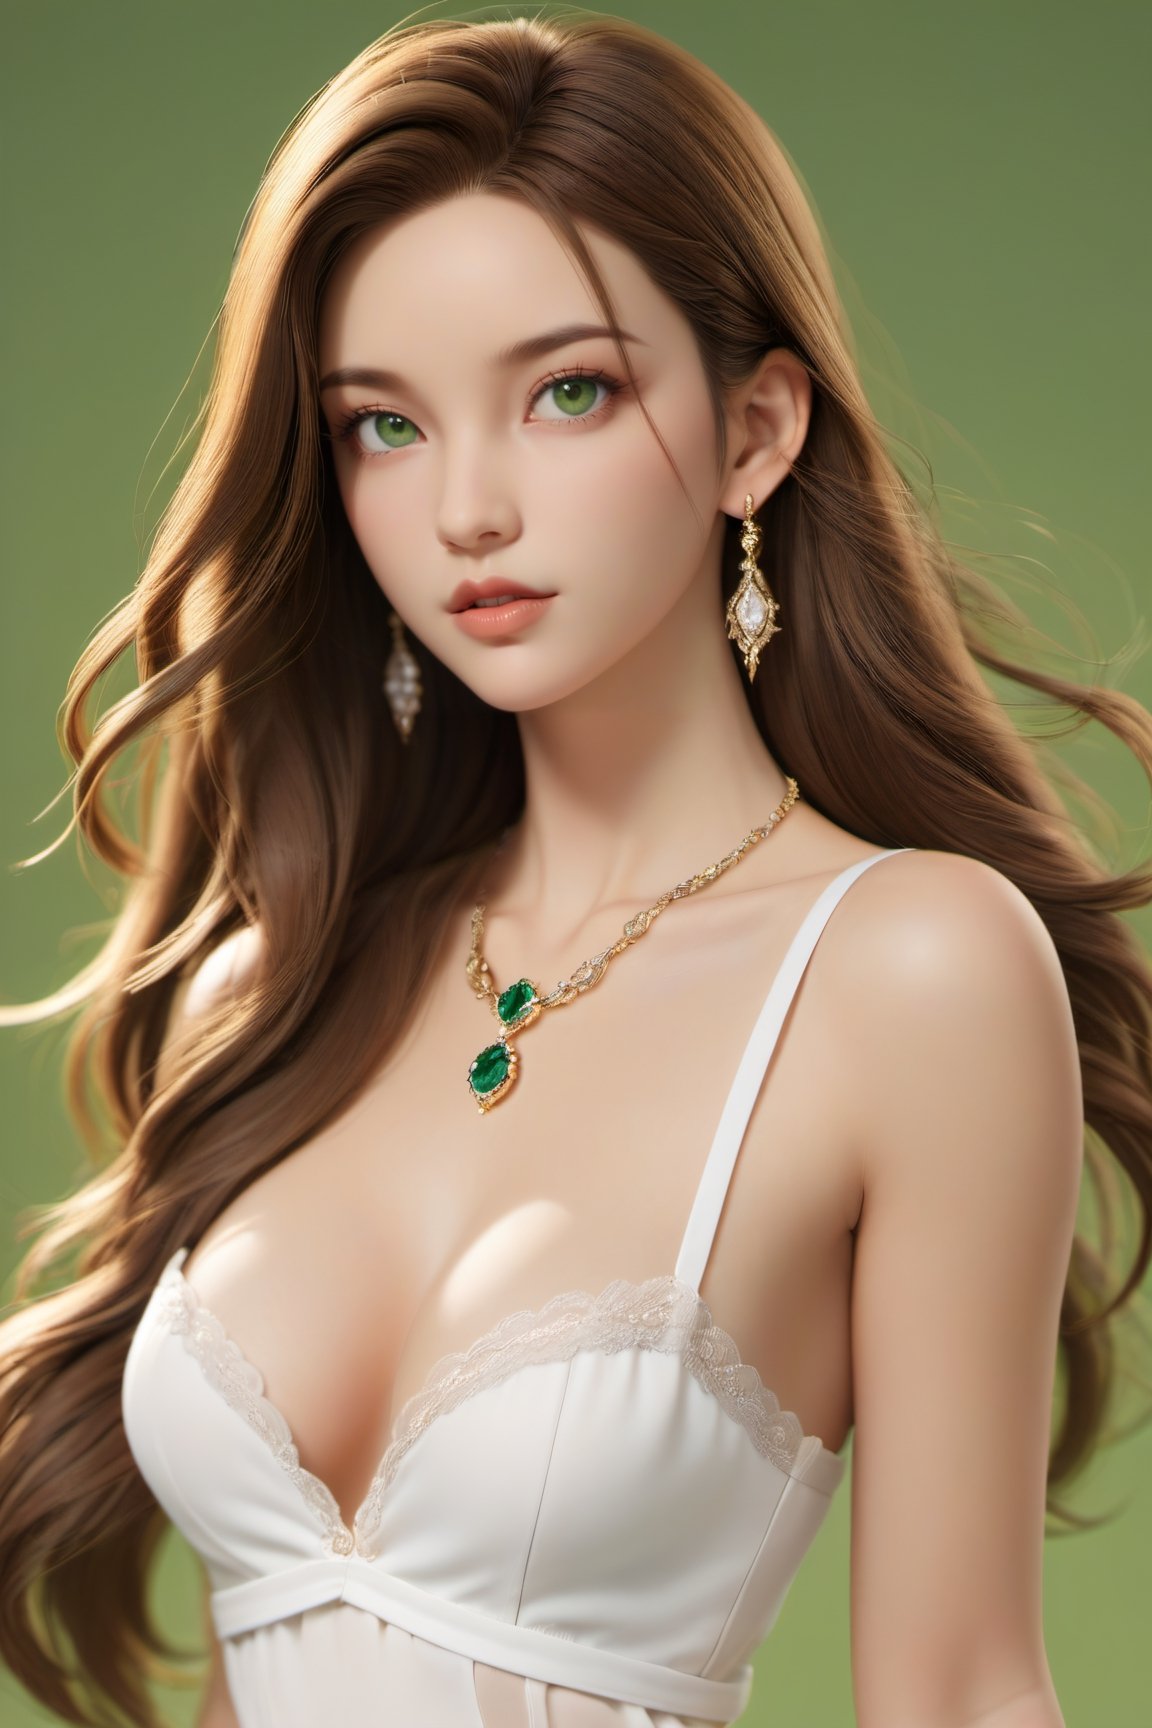 1girl, white bra, simple background, jewelry, long hair, earrings, lips, solo, green eyes, upper body
